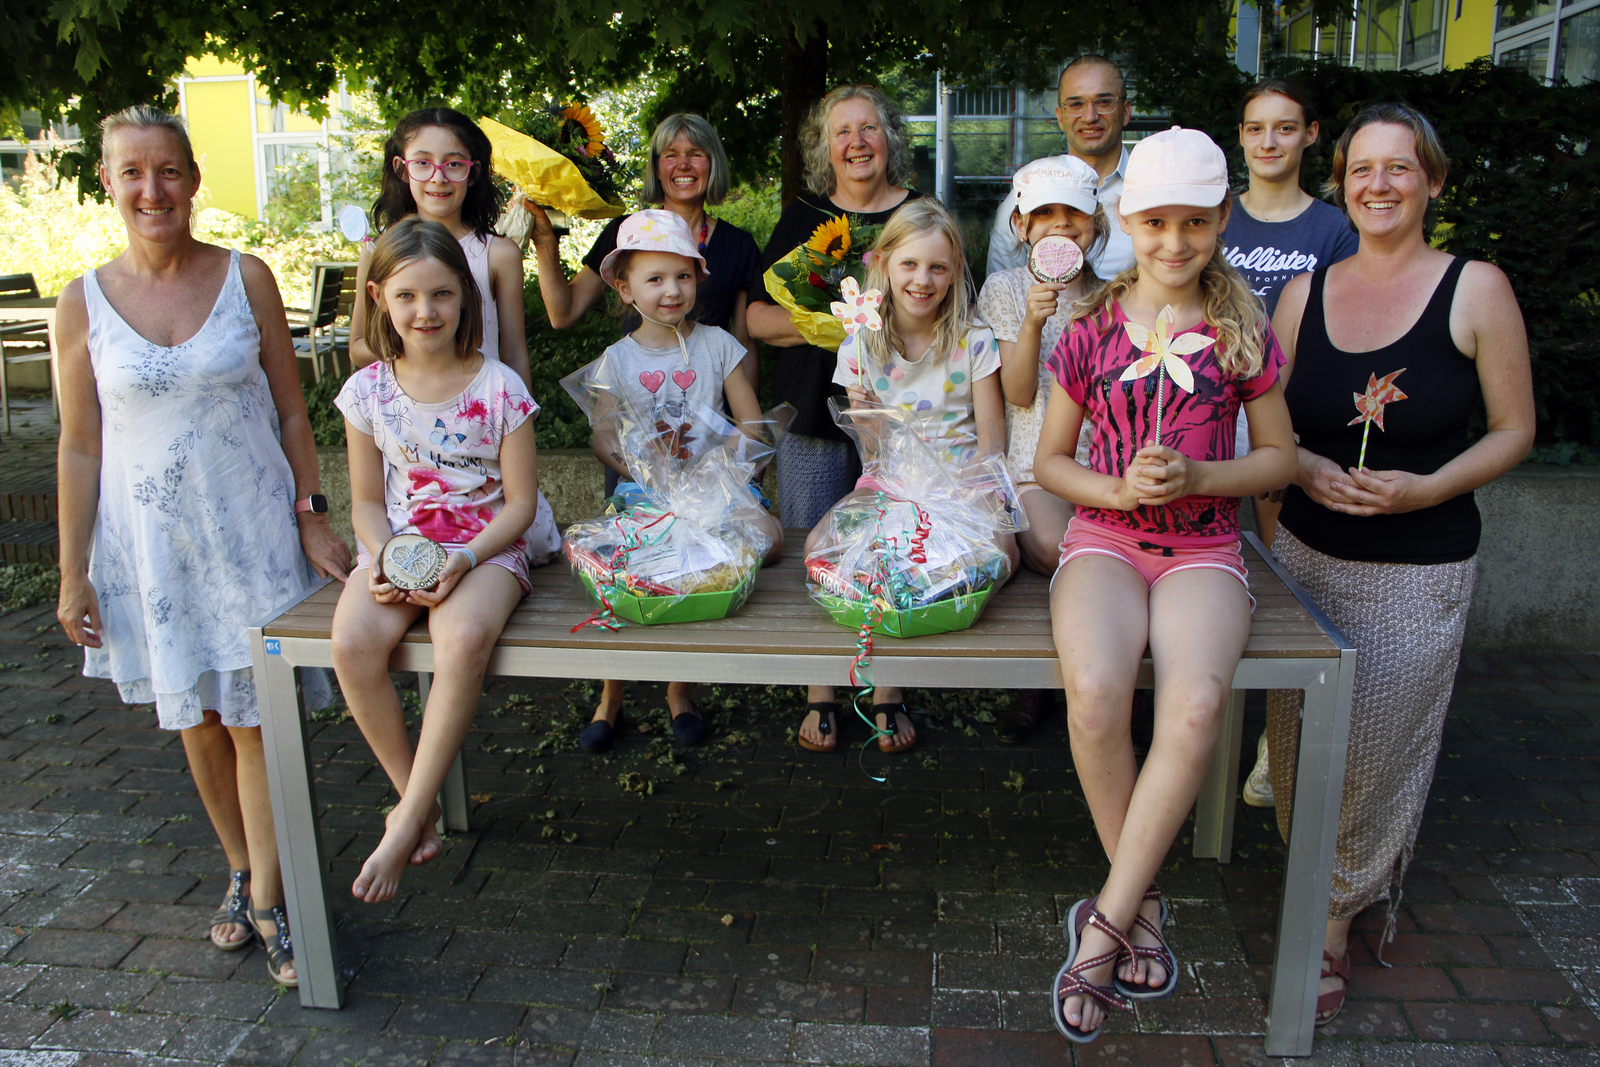 Gruppenbild die Kinder sitzen mit den geschenken draußen auf einem Tisch, die Erwachsenen stehen neben und hinter dem Tischv